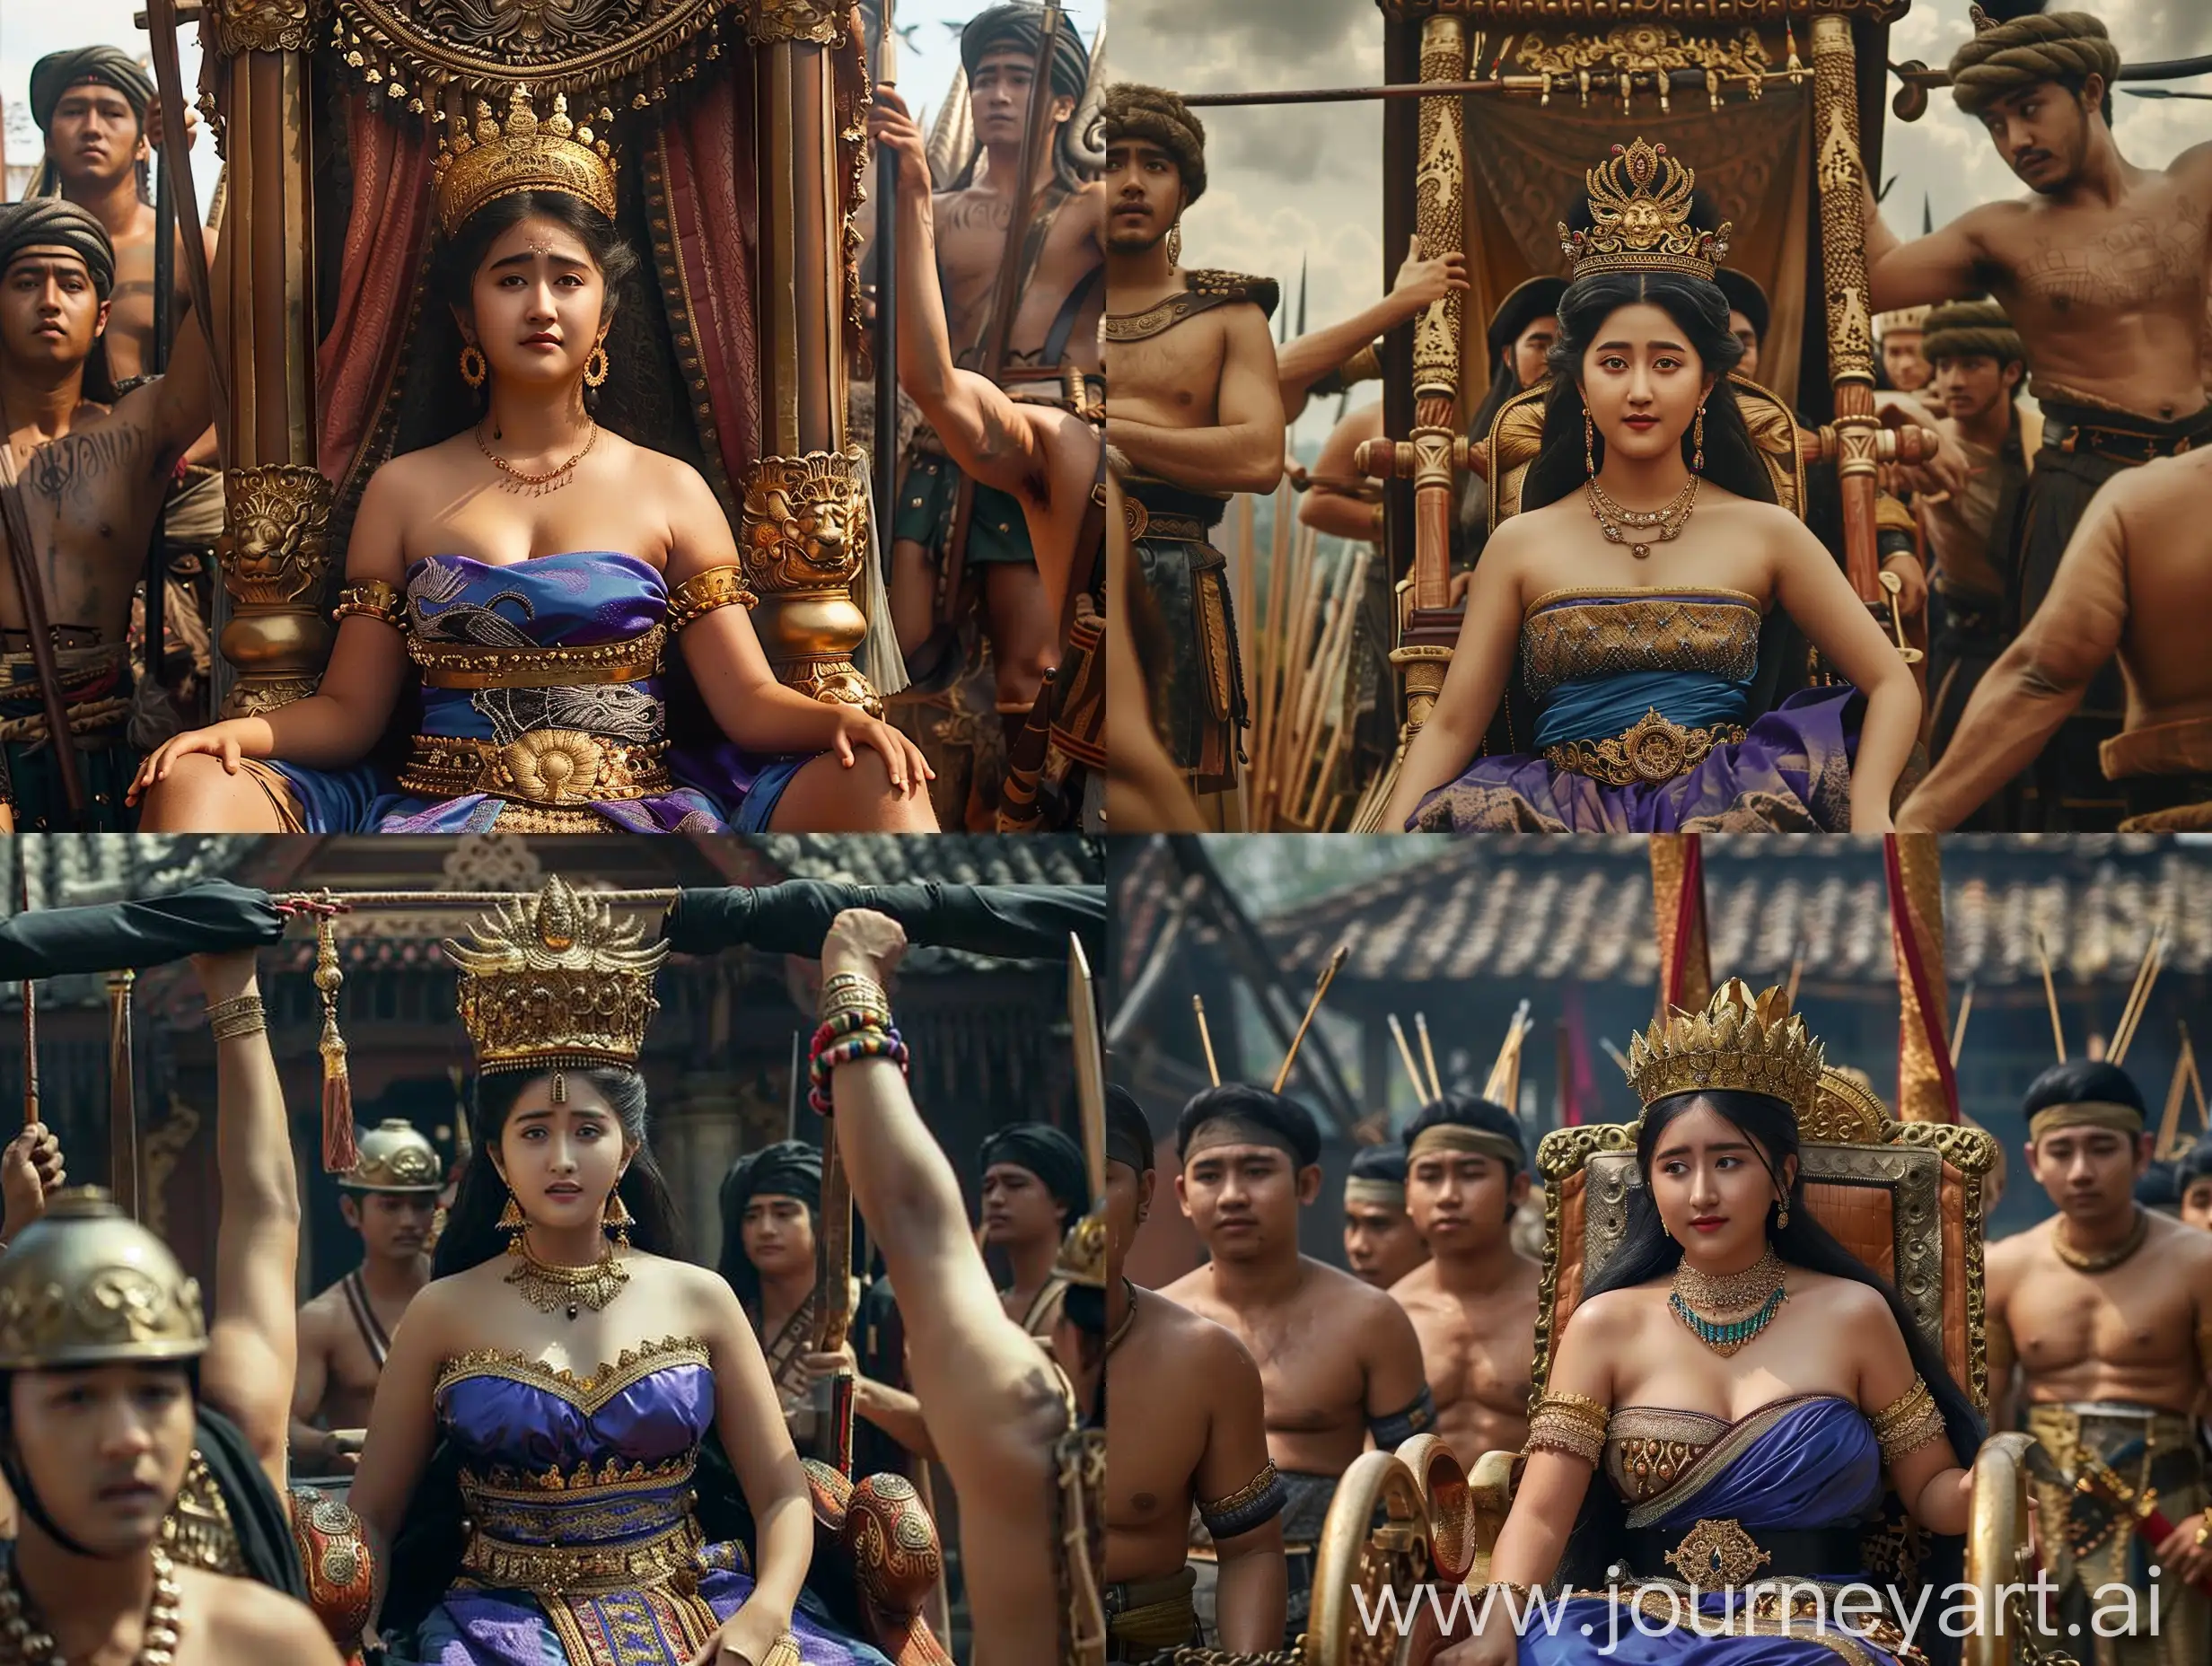 Indonesian-Kingdom-of-Pajajaran-Dyah-Pitaloka-in-Royal-Palanquin